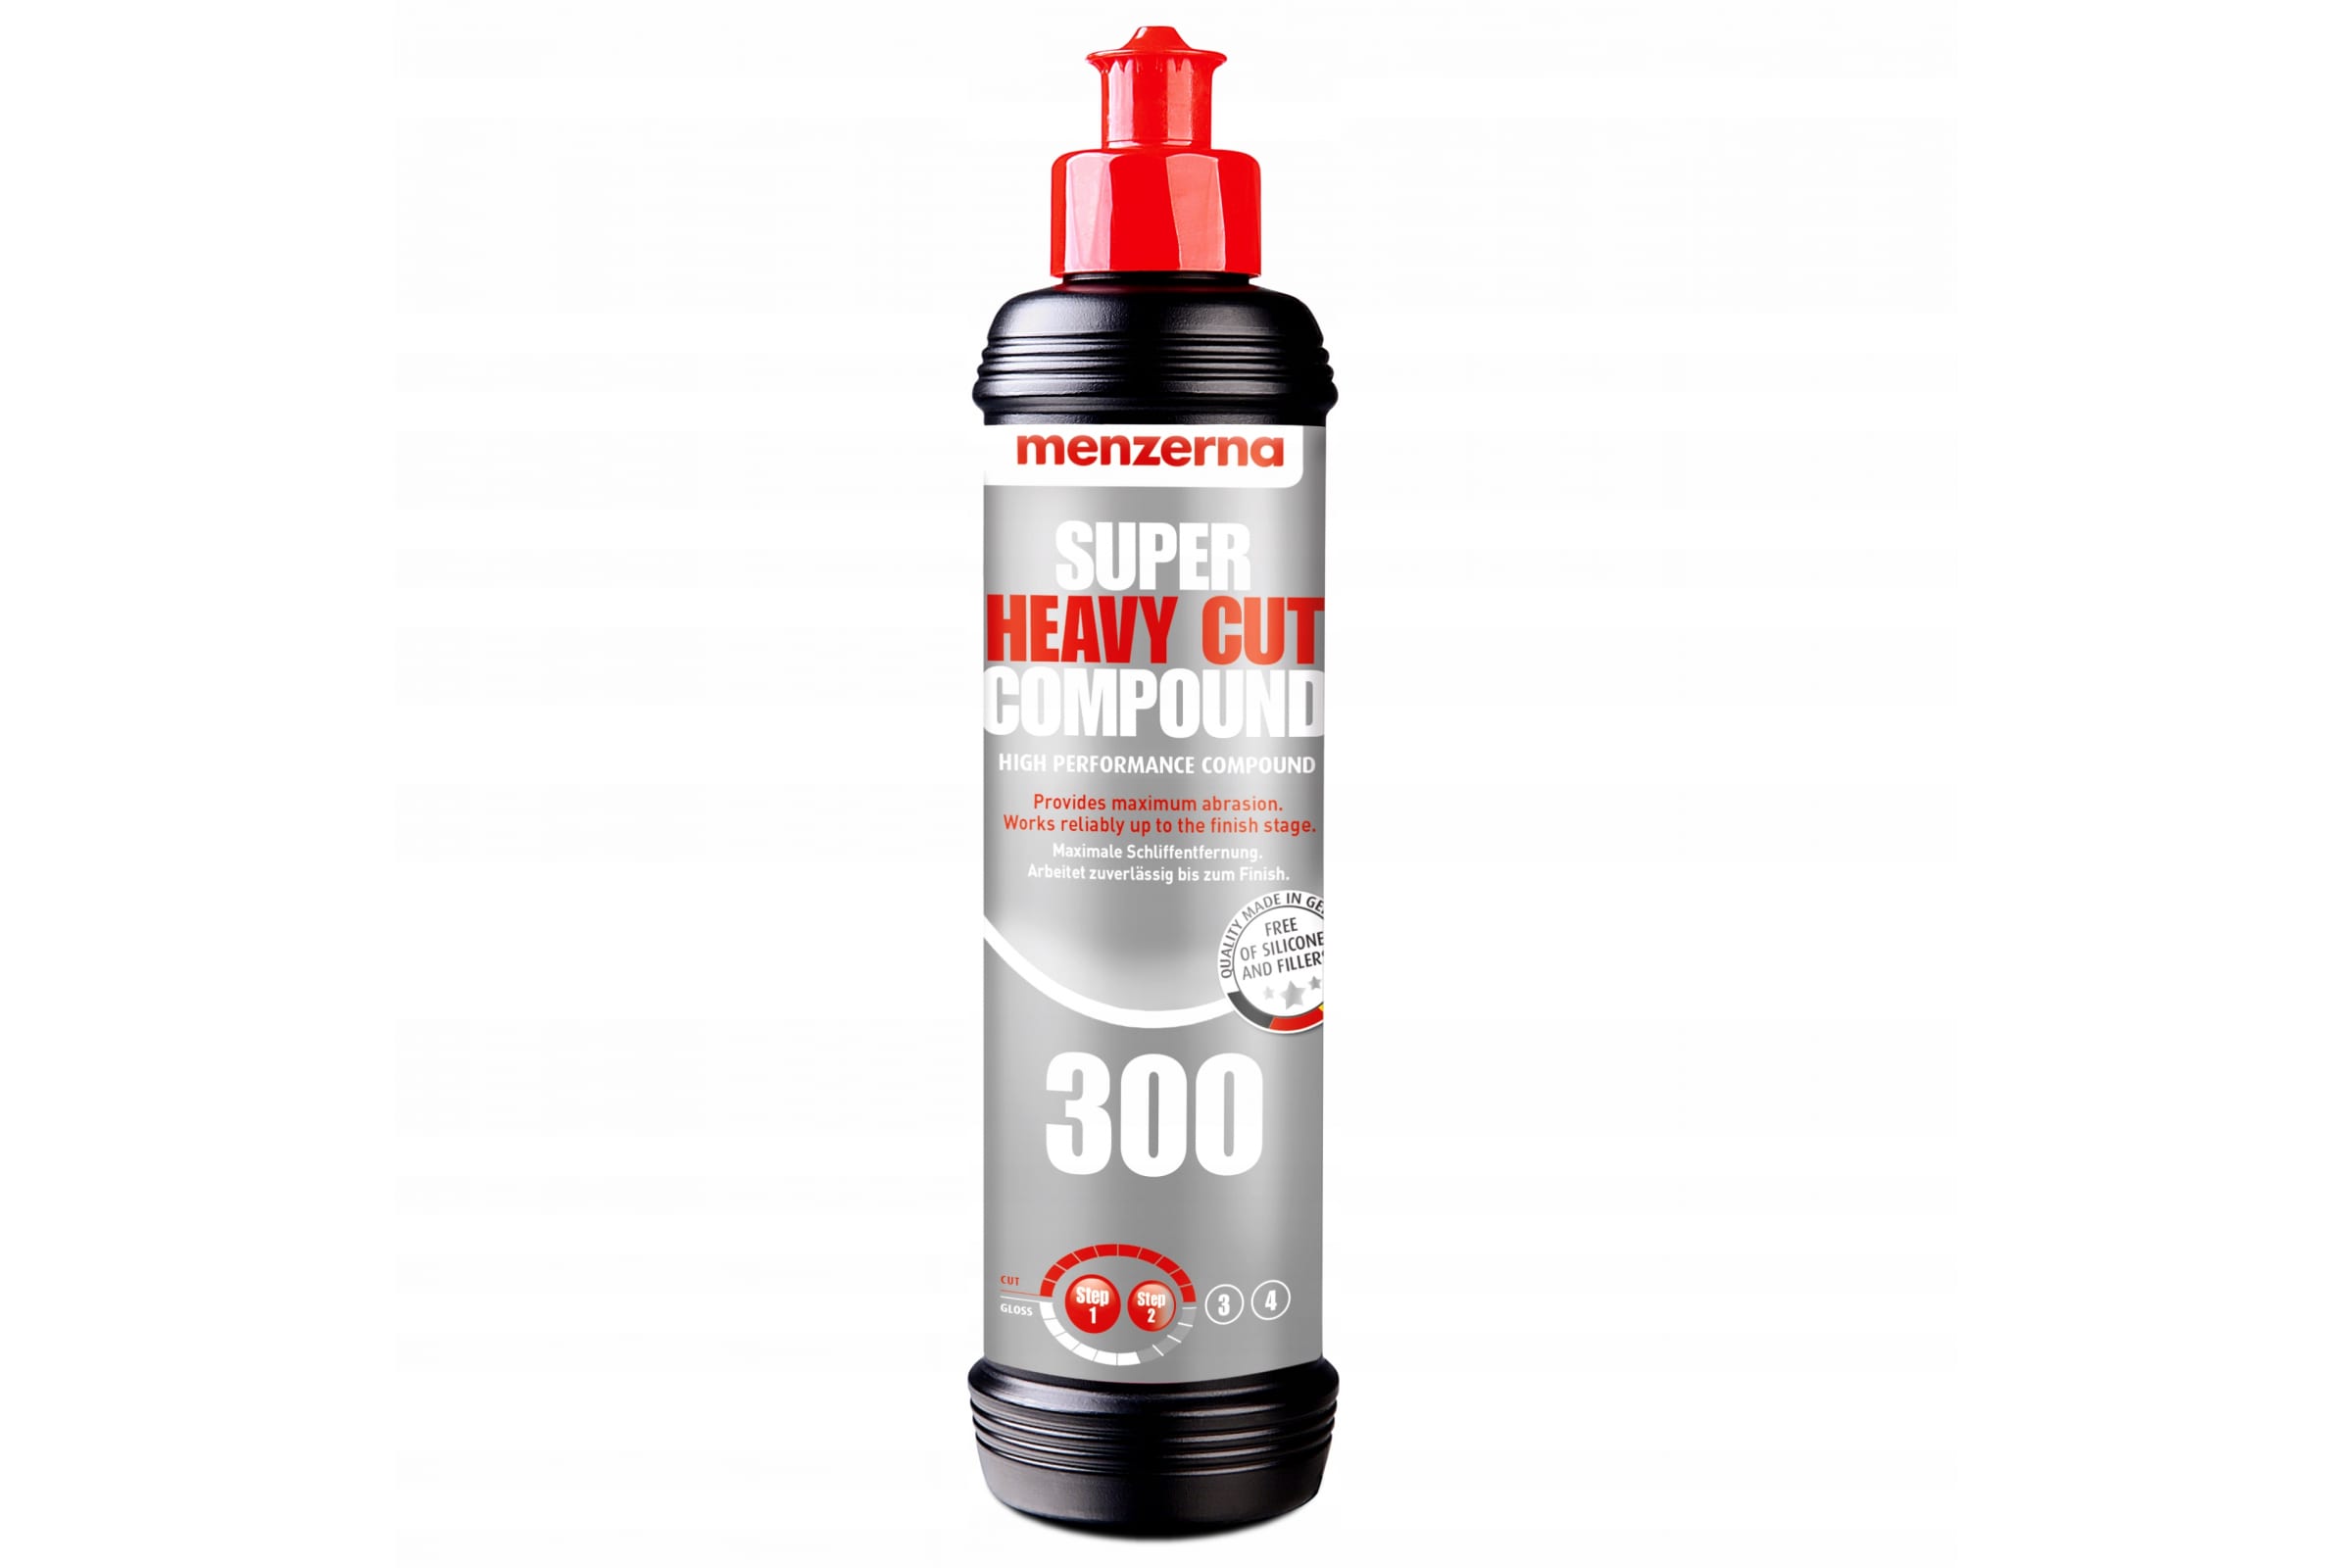 Menzerna SHCC300 - Super Heavy Cut Compound 300 - полиовальная паста 250мл 22746.281.001 антиголограмная полировальная паста menzerna